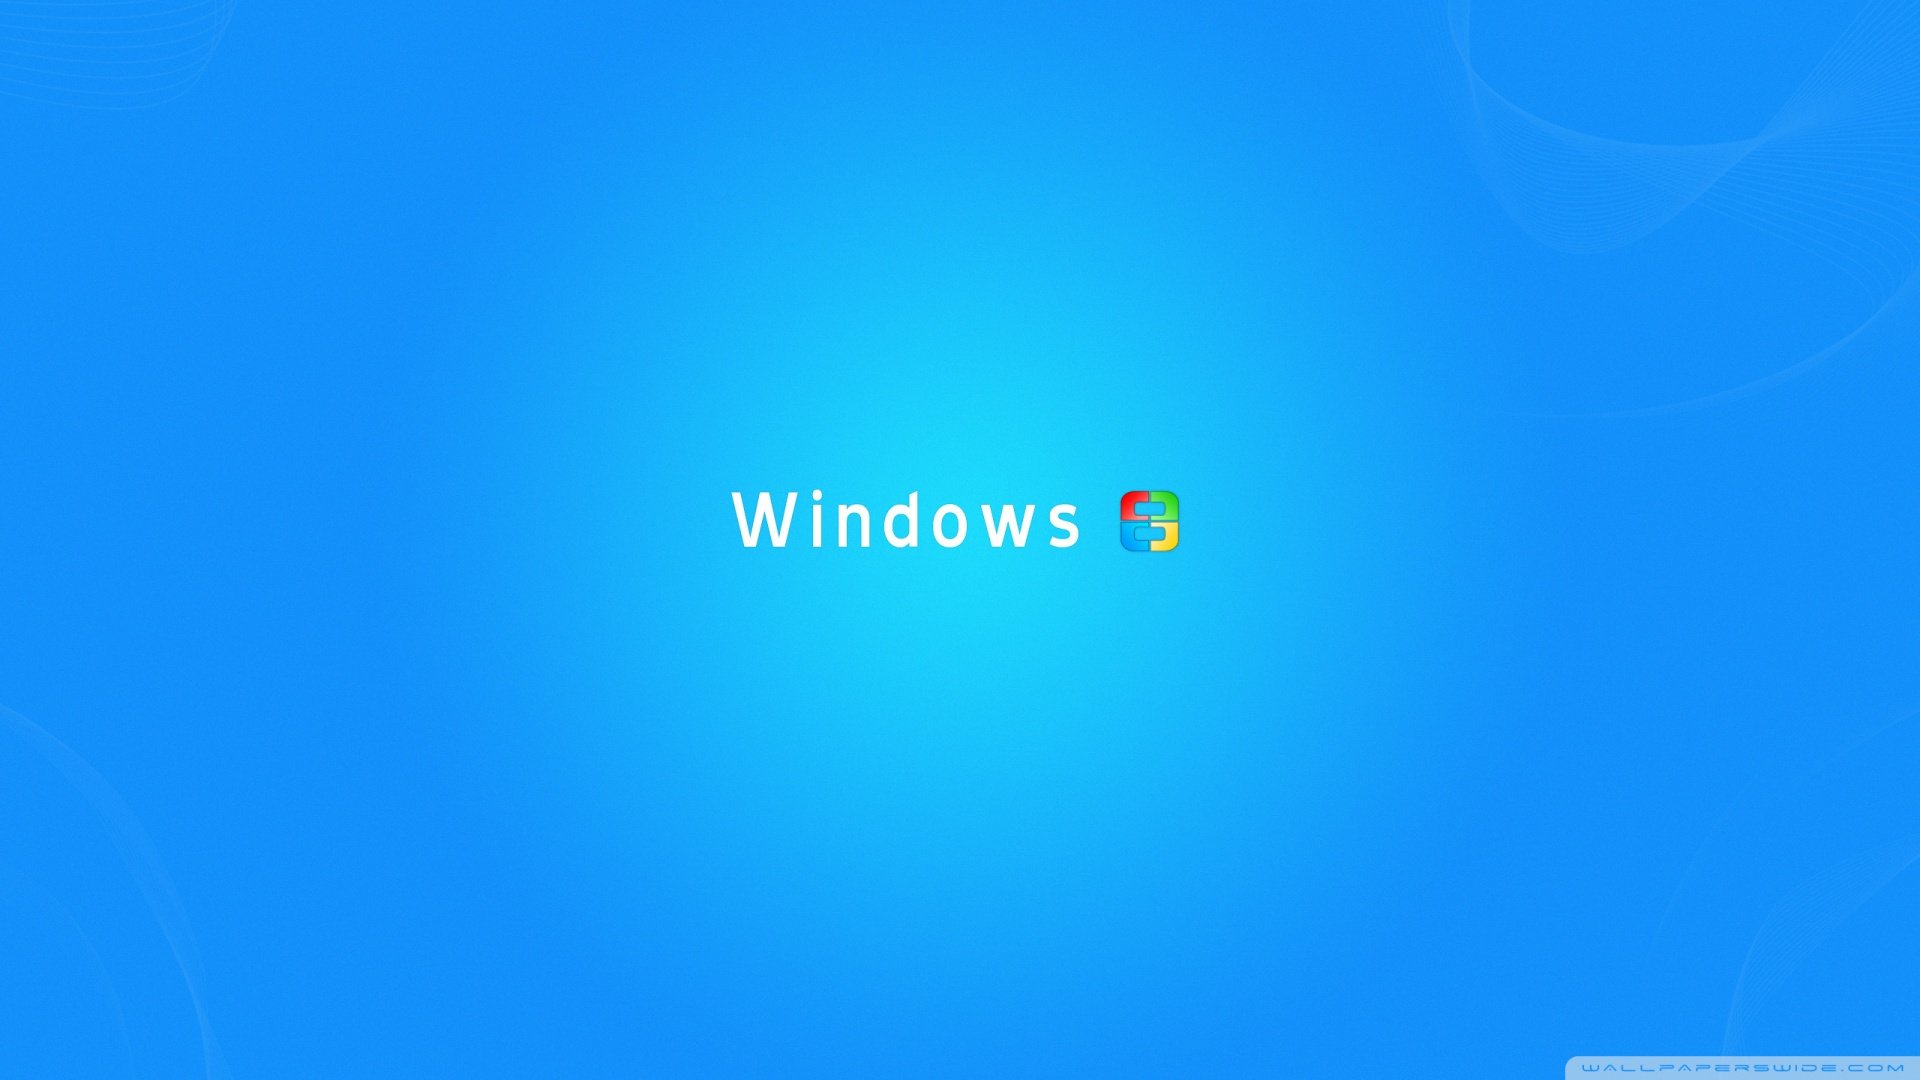 Windows 8 Wallpaper 1920x1080 1920x1080 windows 8 wallpaper 1920x1080